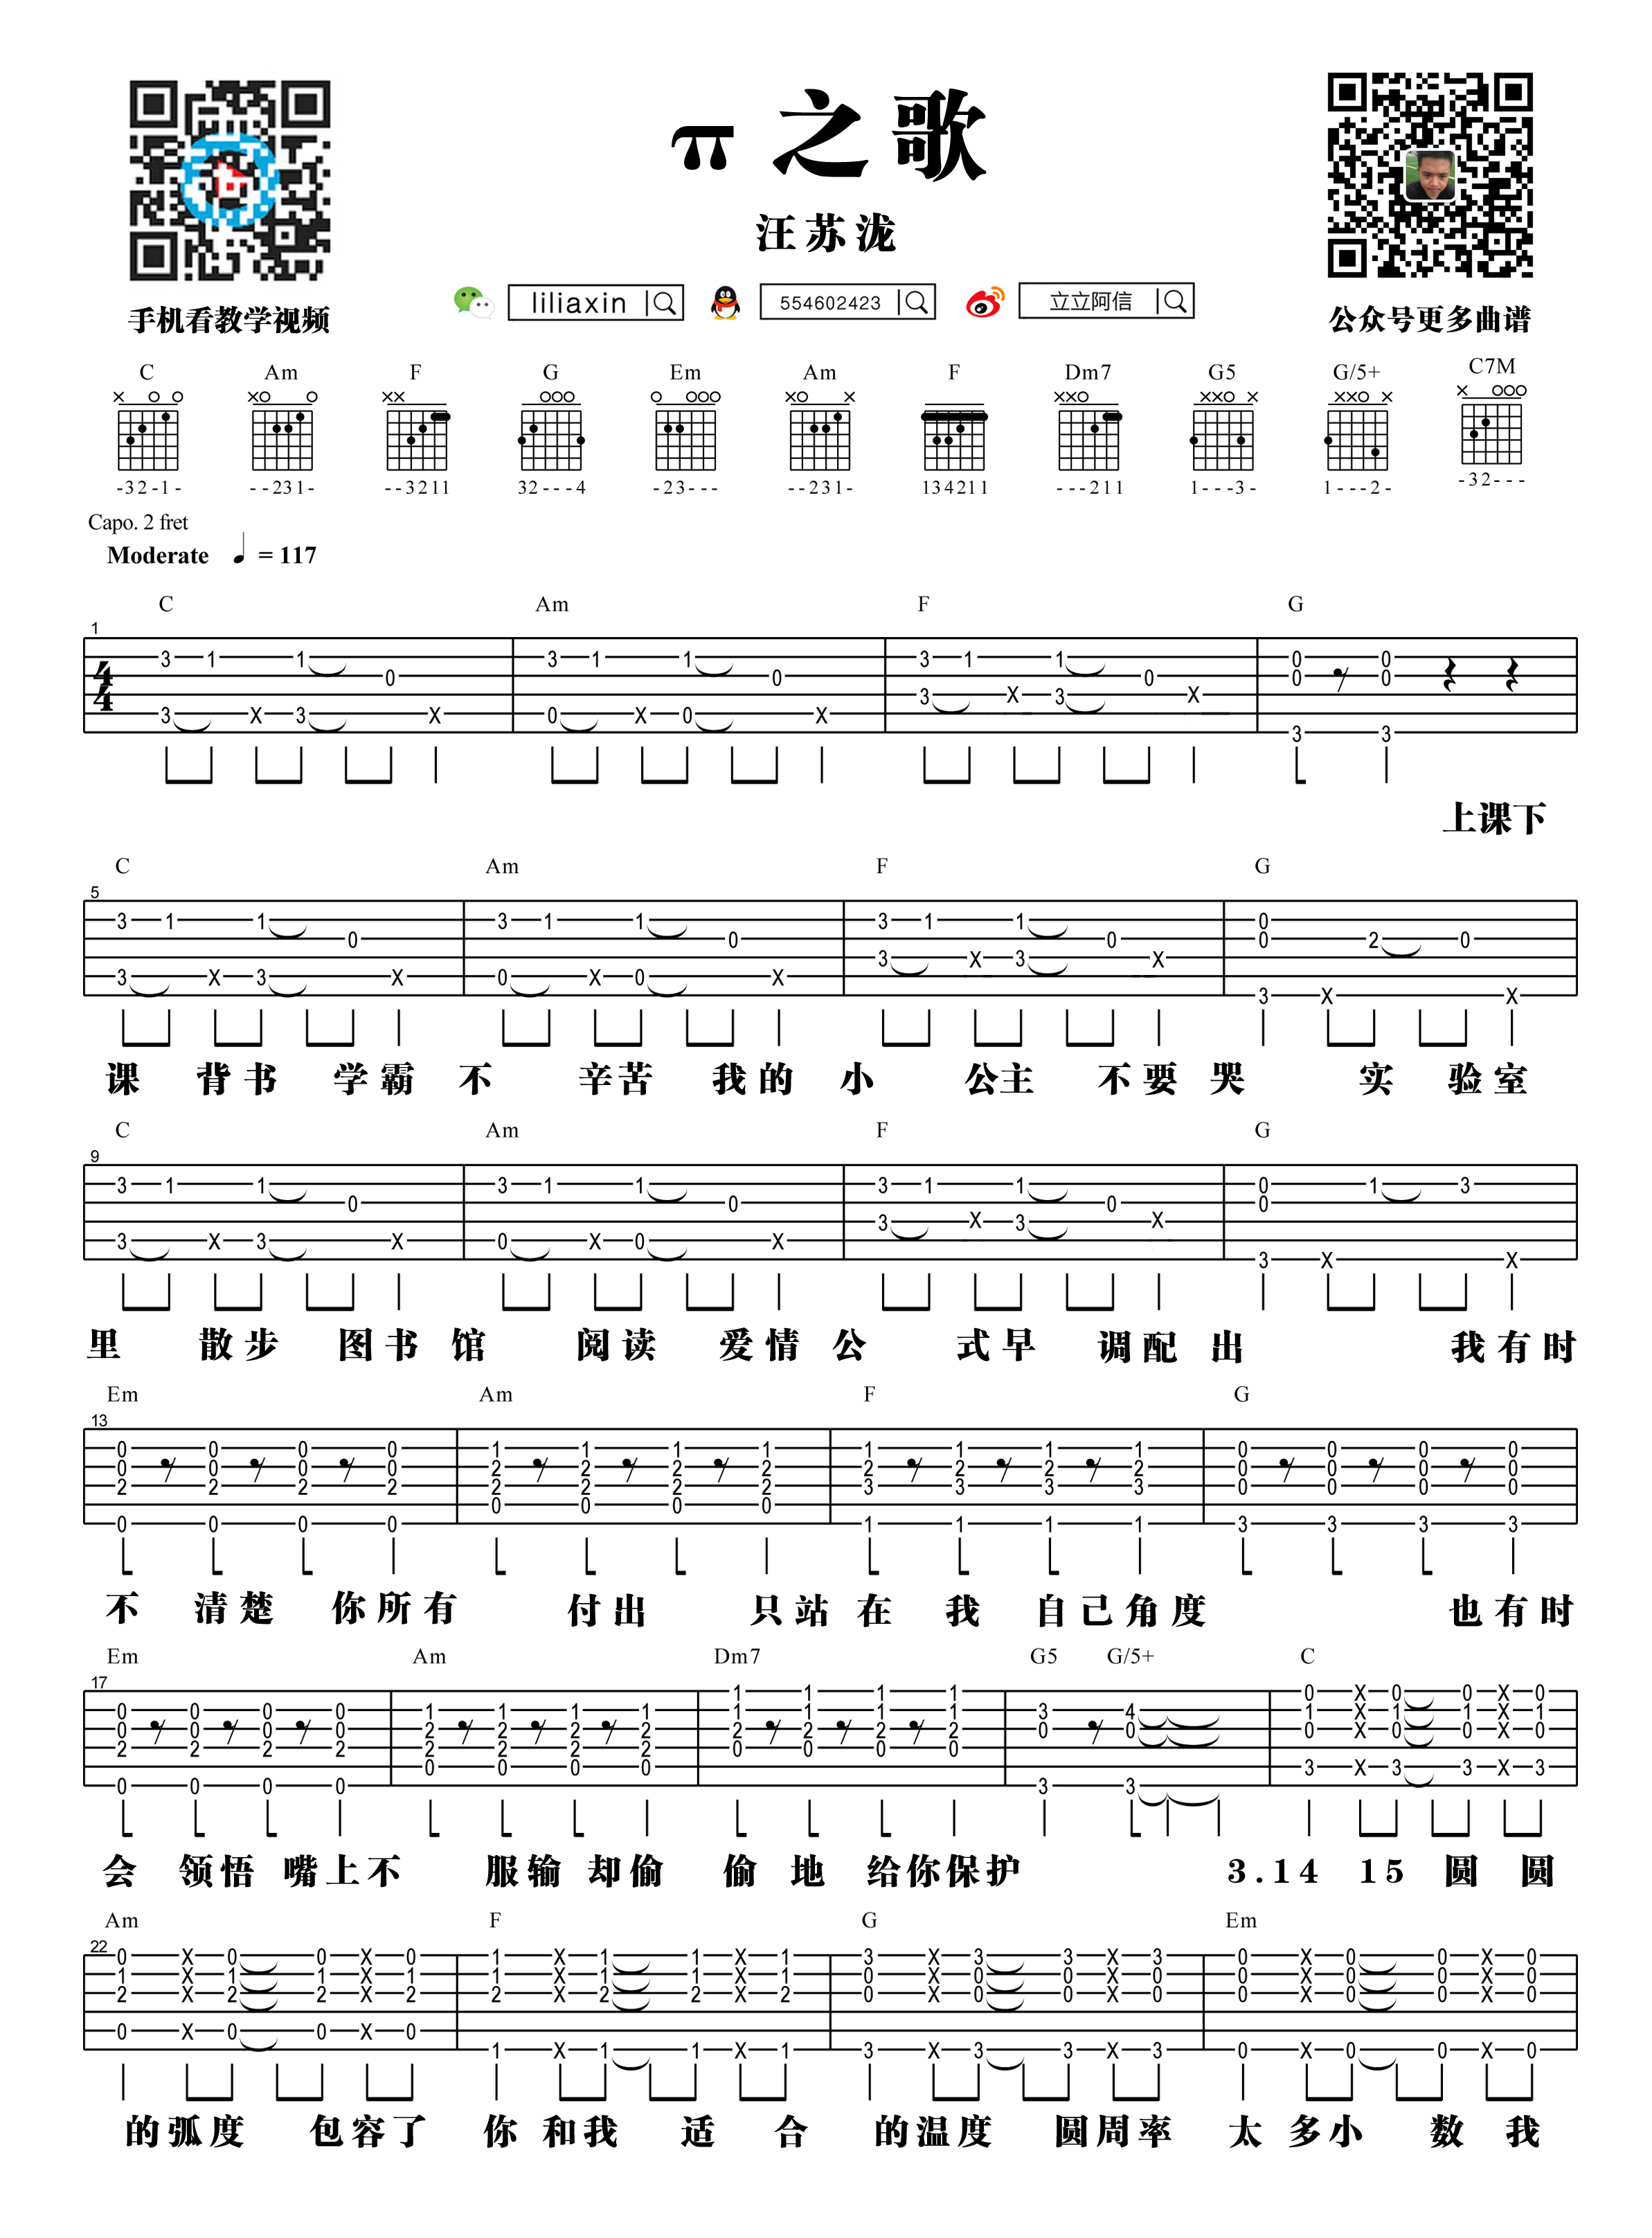 【阿信乐器】#22 汪苏泷《π之歌》吉他教学吉他谱(图片谱,弹唱,教学)_汪苏泷(silence.w)_π之歌-1.jpg